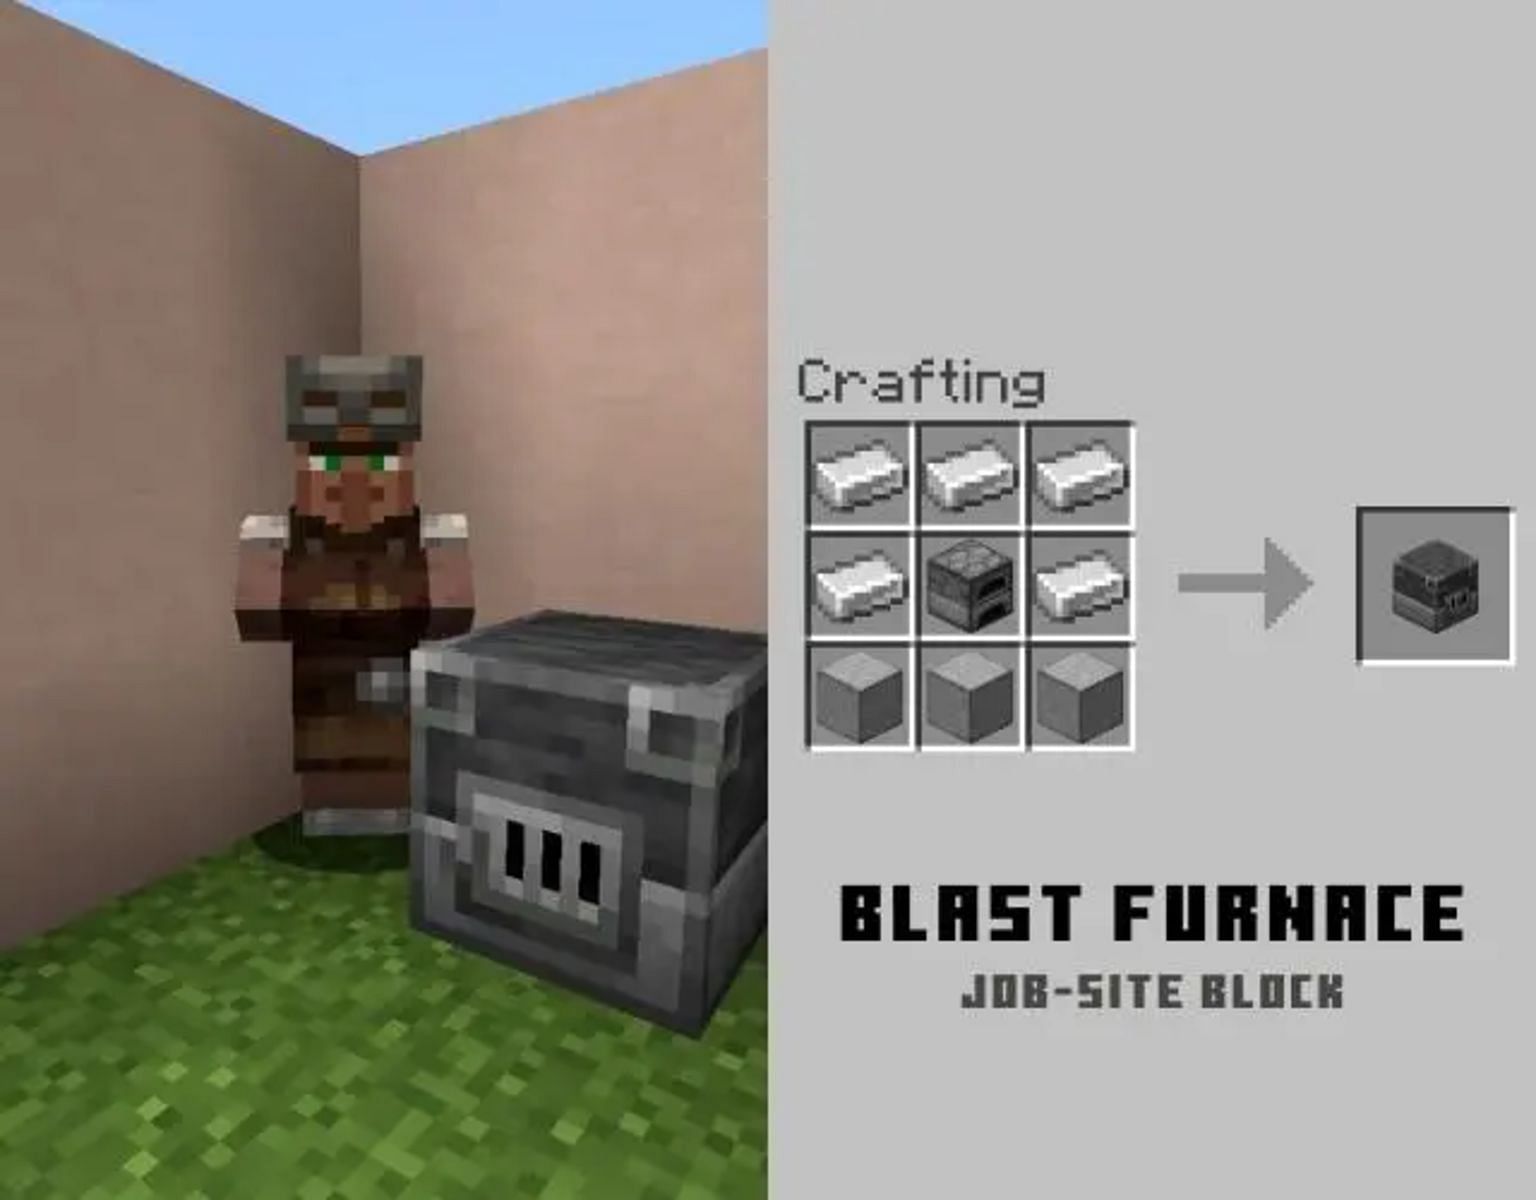 An armorer and its blast furnace (Image via Mojang)